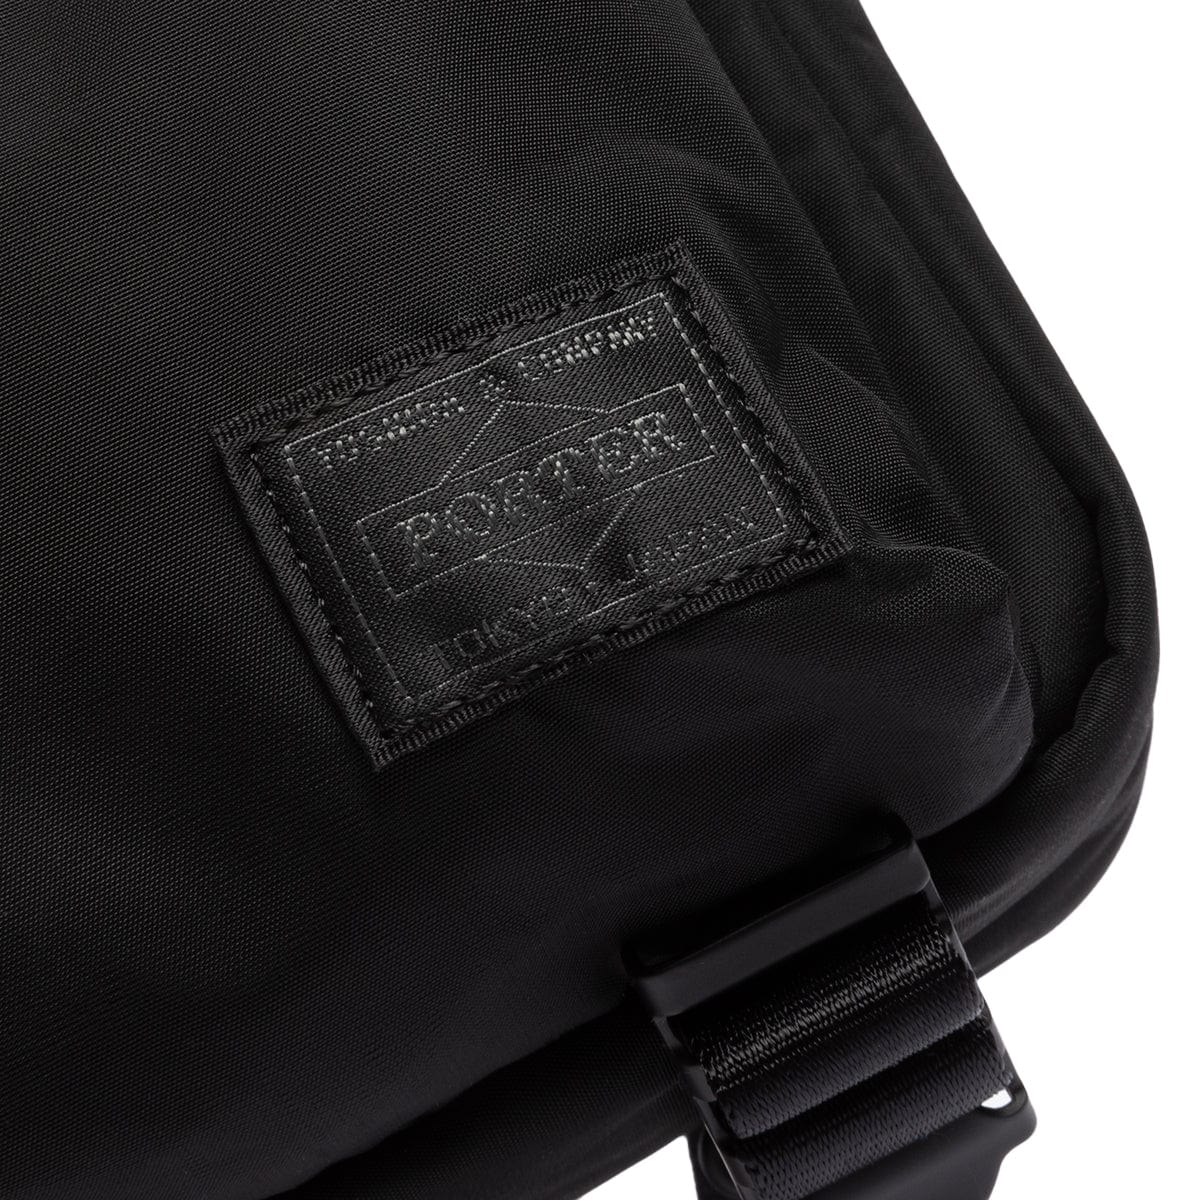 PORTER YOSHIDA & CO Accessories - Bags BLACK / O/S SENSES VERTICAL SHOULDER BAG